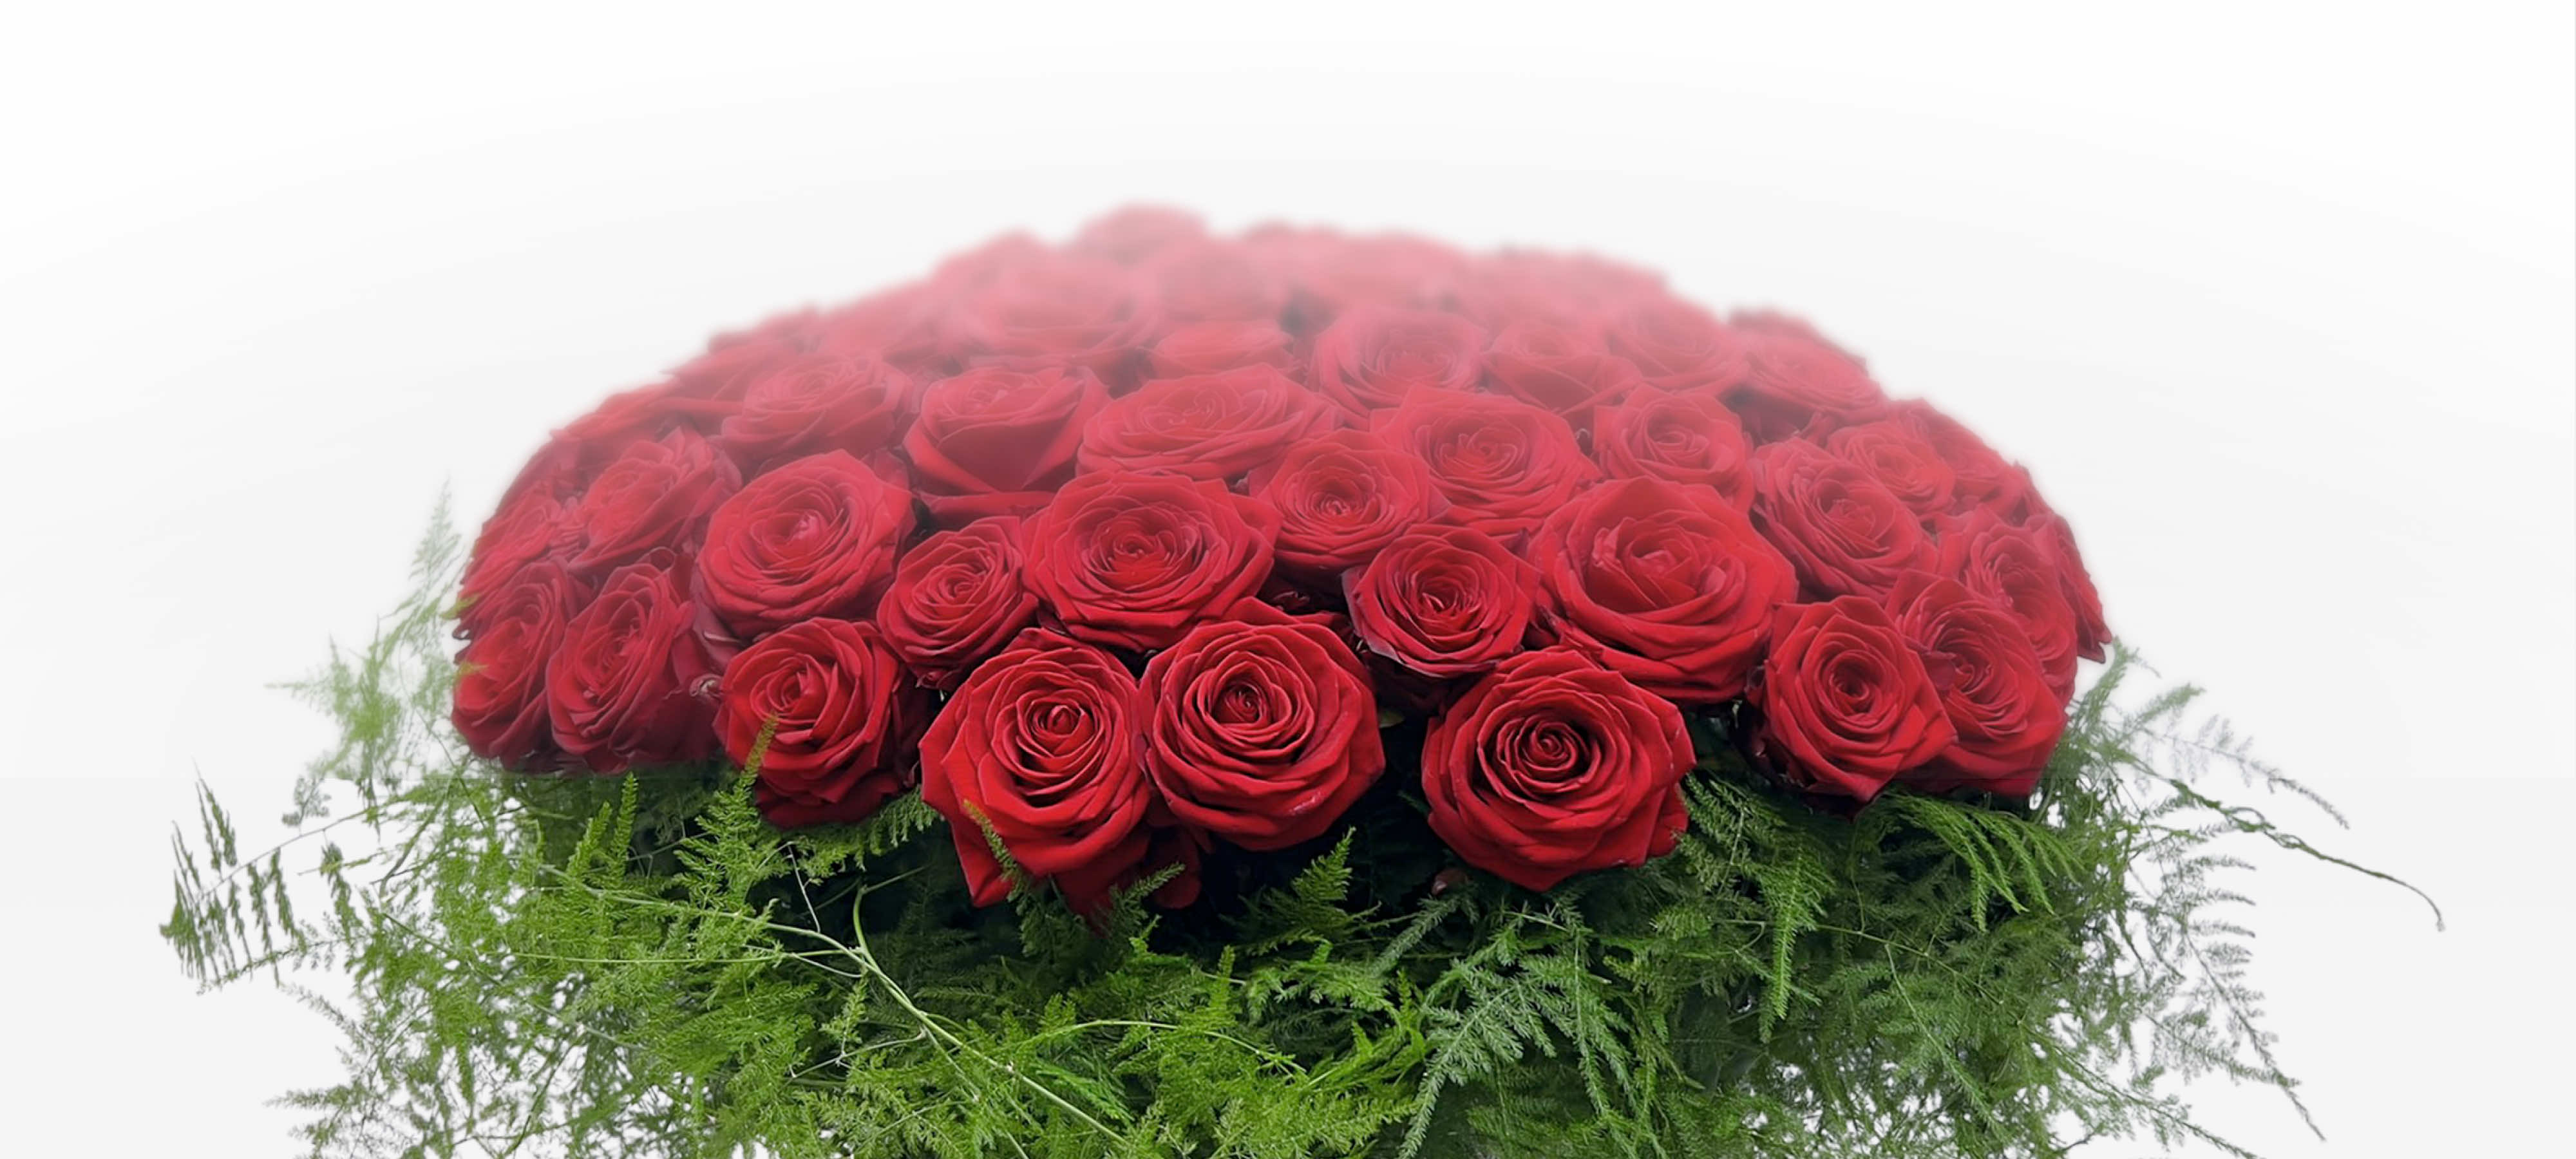 100 grandes roses rouge pour dire je t'aime.